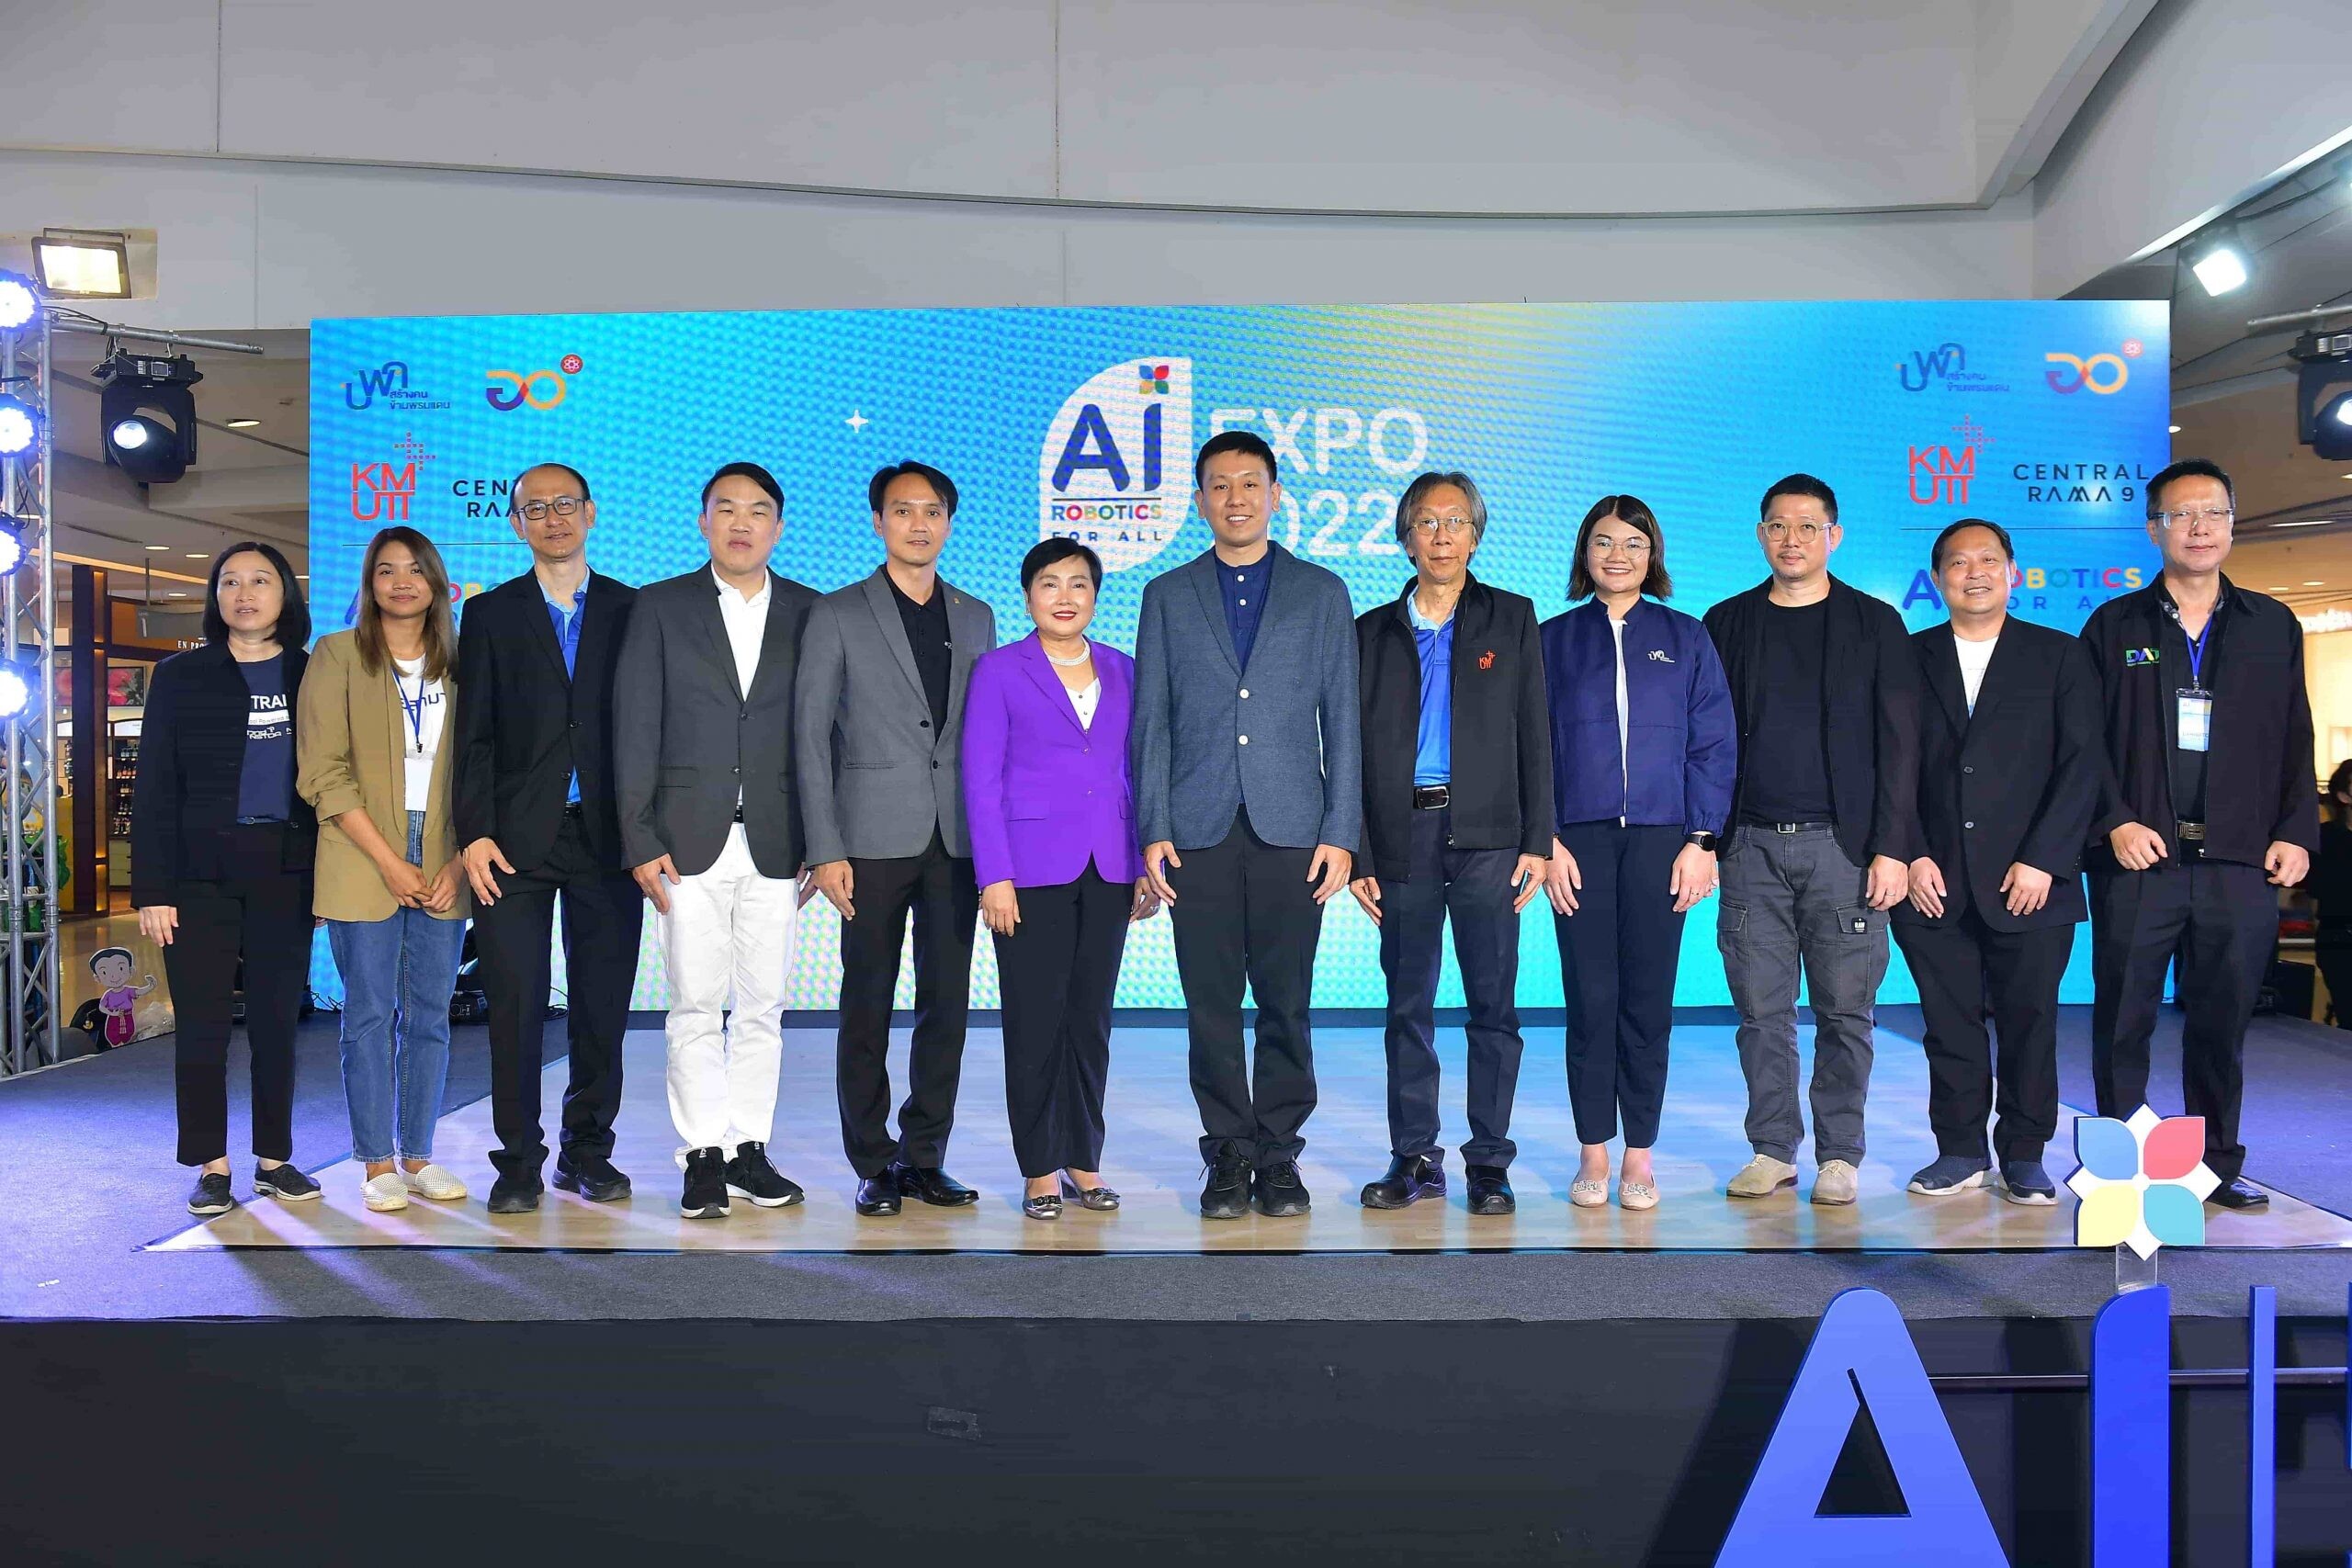 เปิดงาน AI Robotics for All Expo 2022 "ในวันที่ AI ขับเคลื่อนสังคมไทย" โชว์ความก้าวหน้า นำเสนอผลงานการพัฒนาโครงการปัญญาประดิษฐ์ฝีมือคนไทย